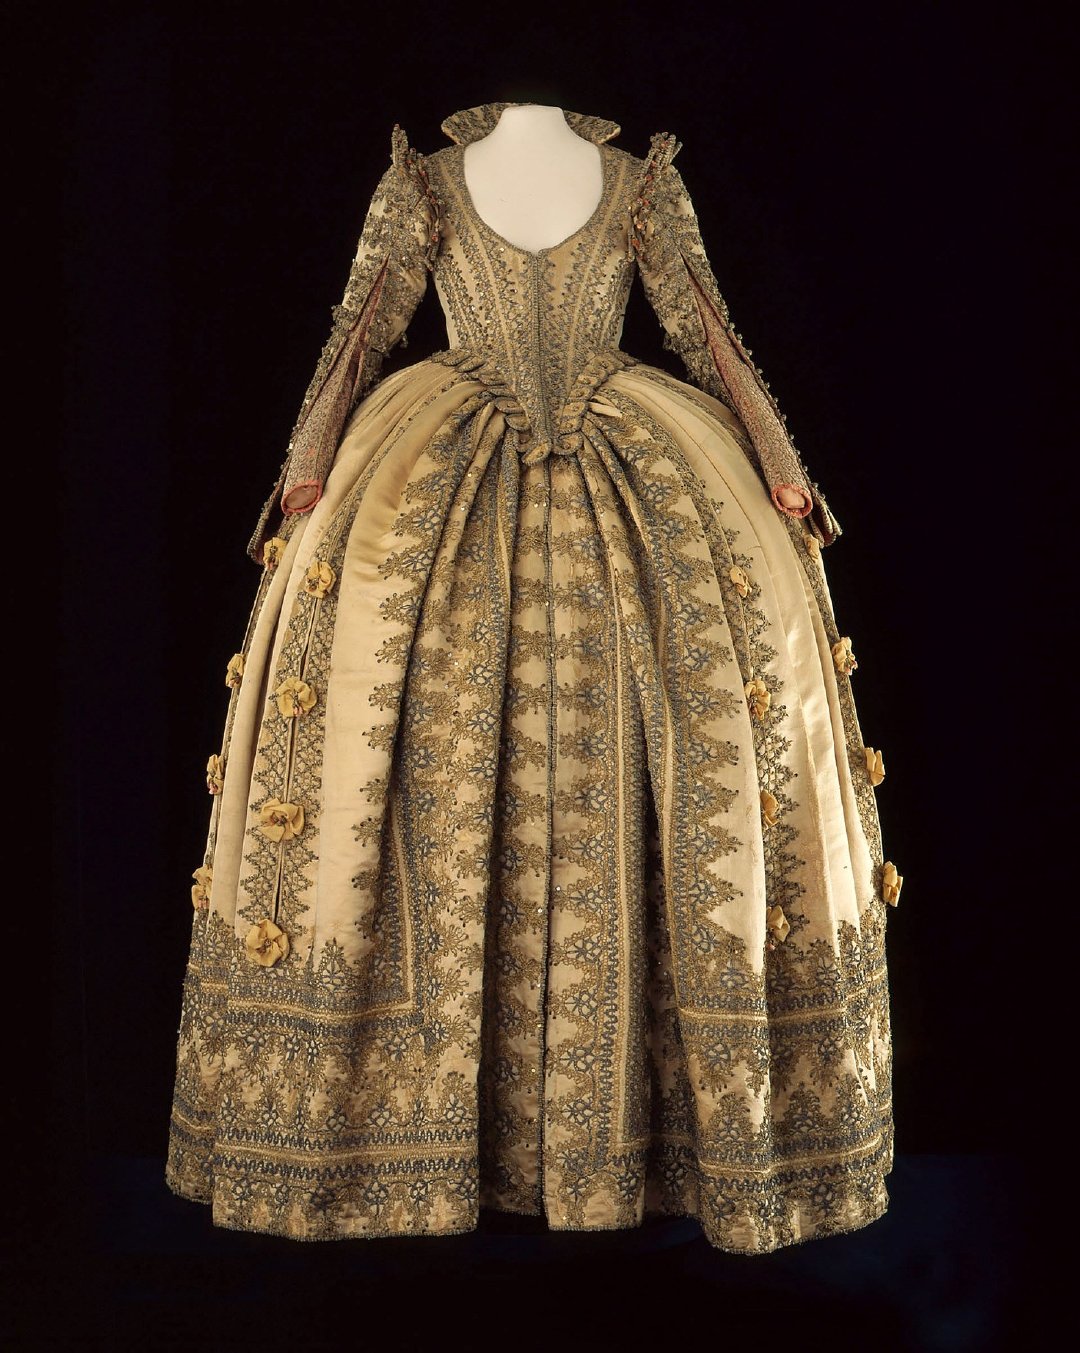 女士贵族礼服,它属于萨克森选帝后妃,普鲁士公主玛格达莱妮·西比勒